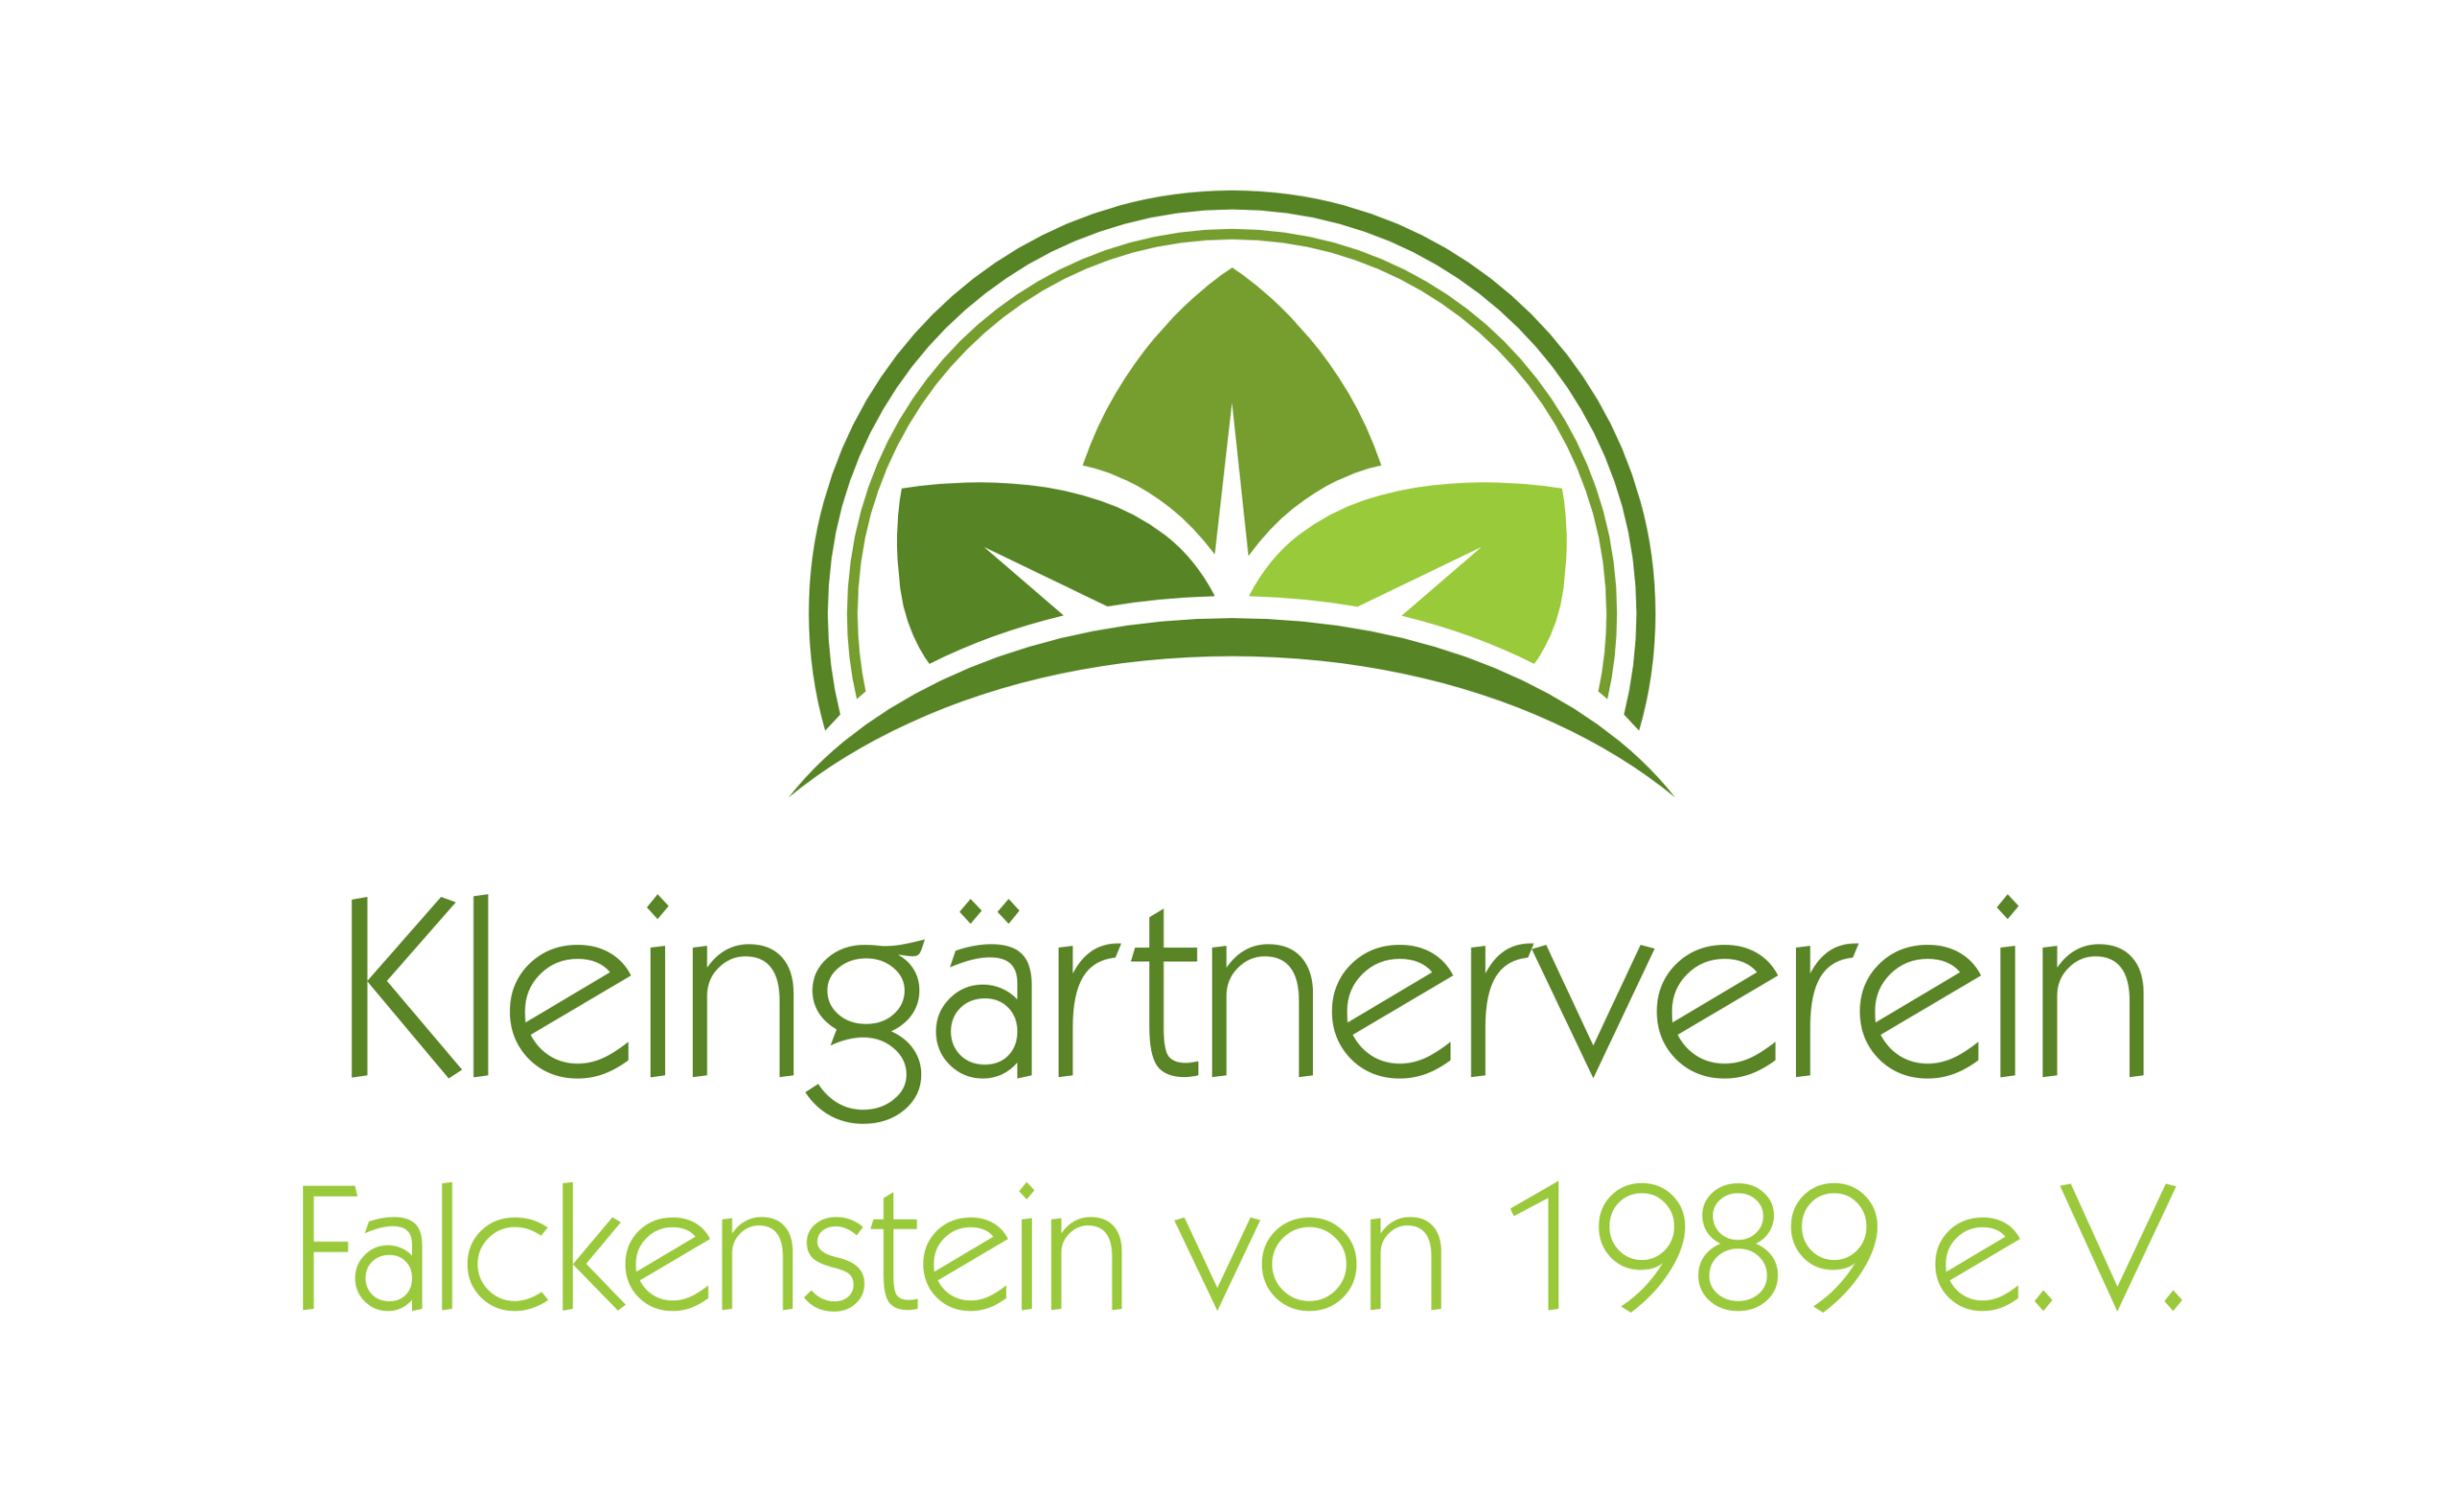 Kleingärtnerverein Falckenstein von 1989 e.V.